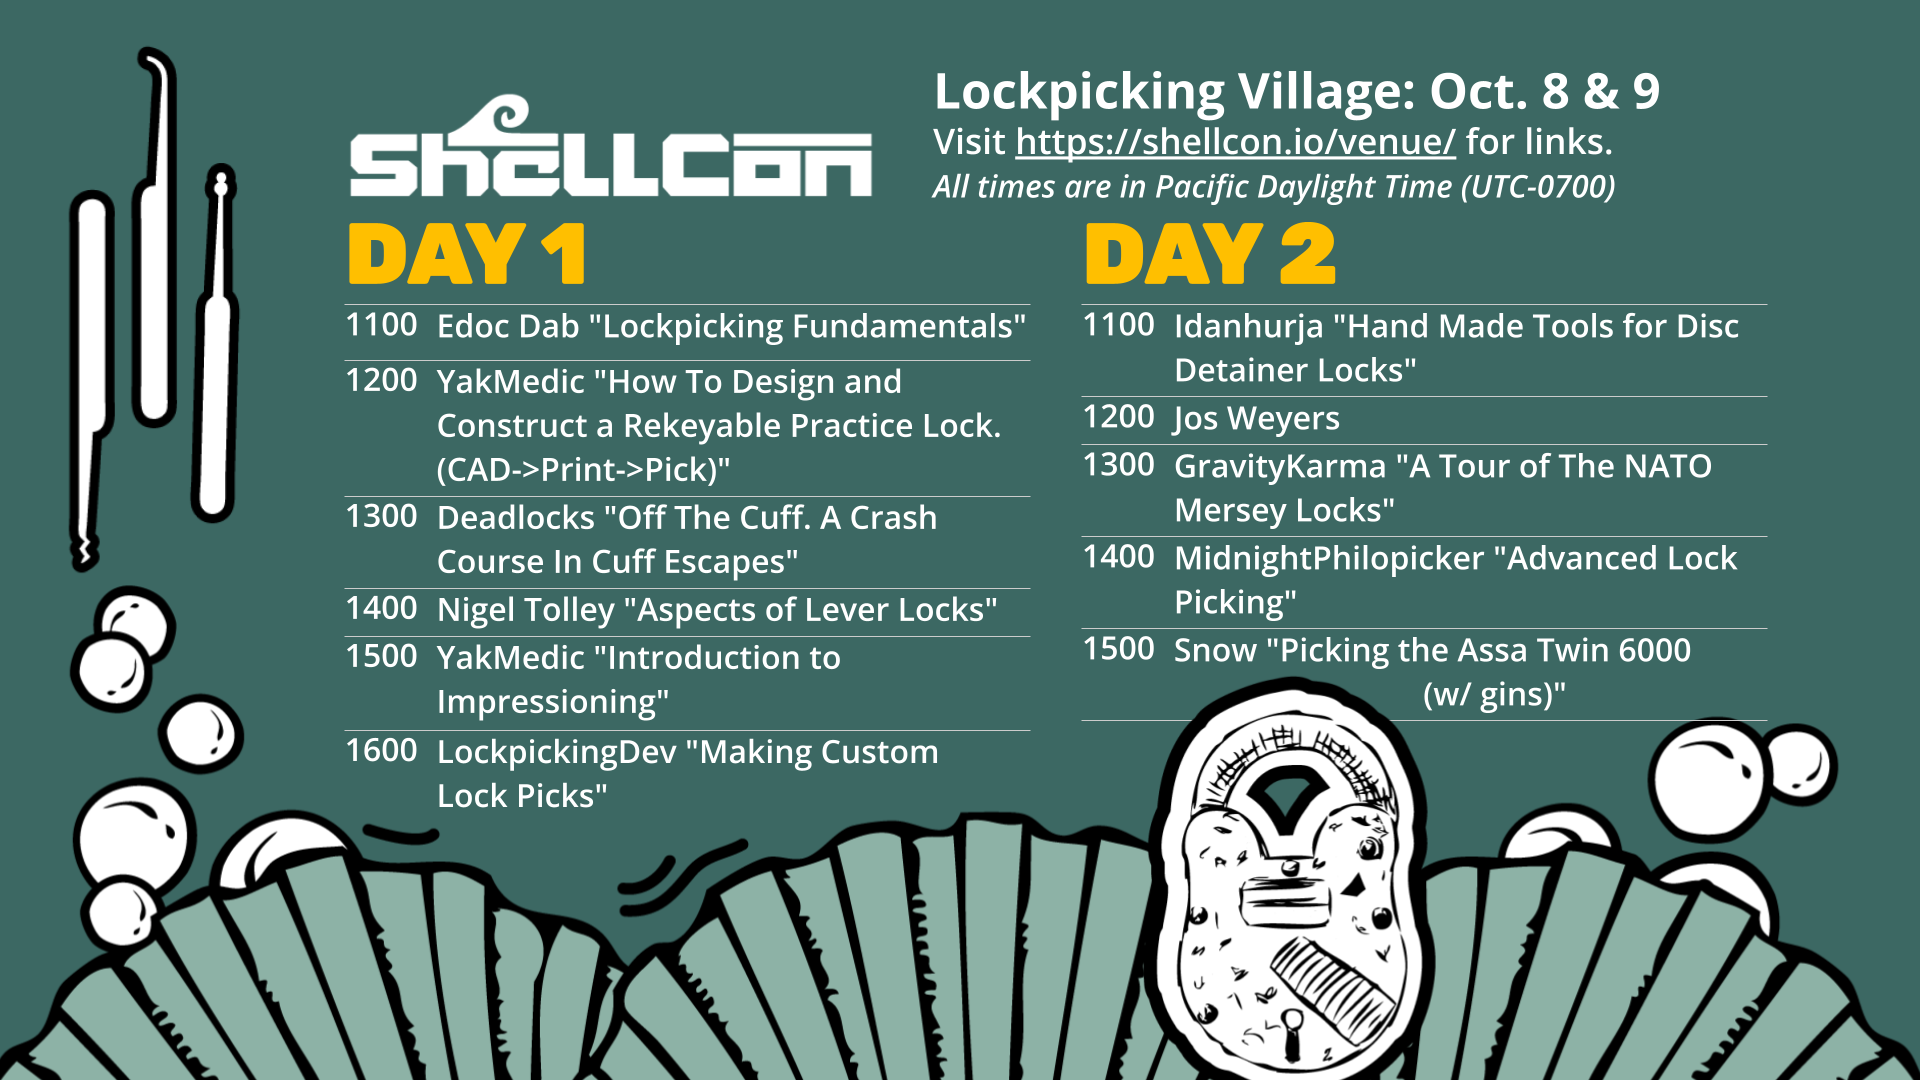 Schedule of lockpicking village